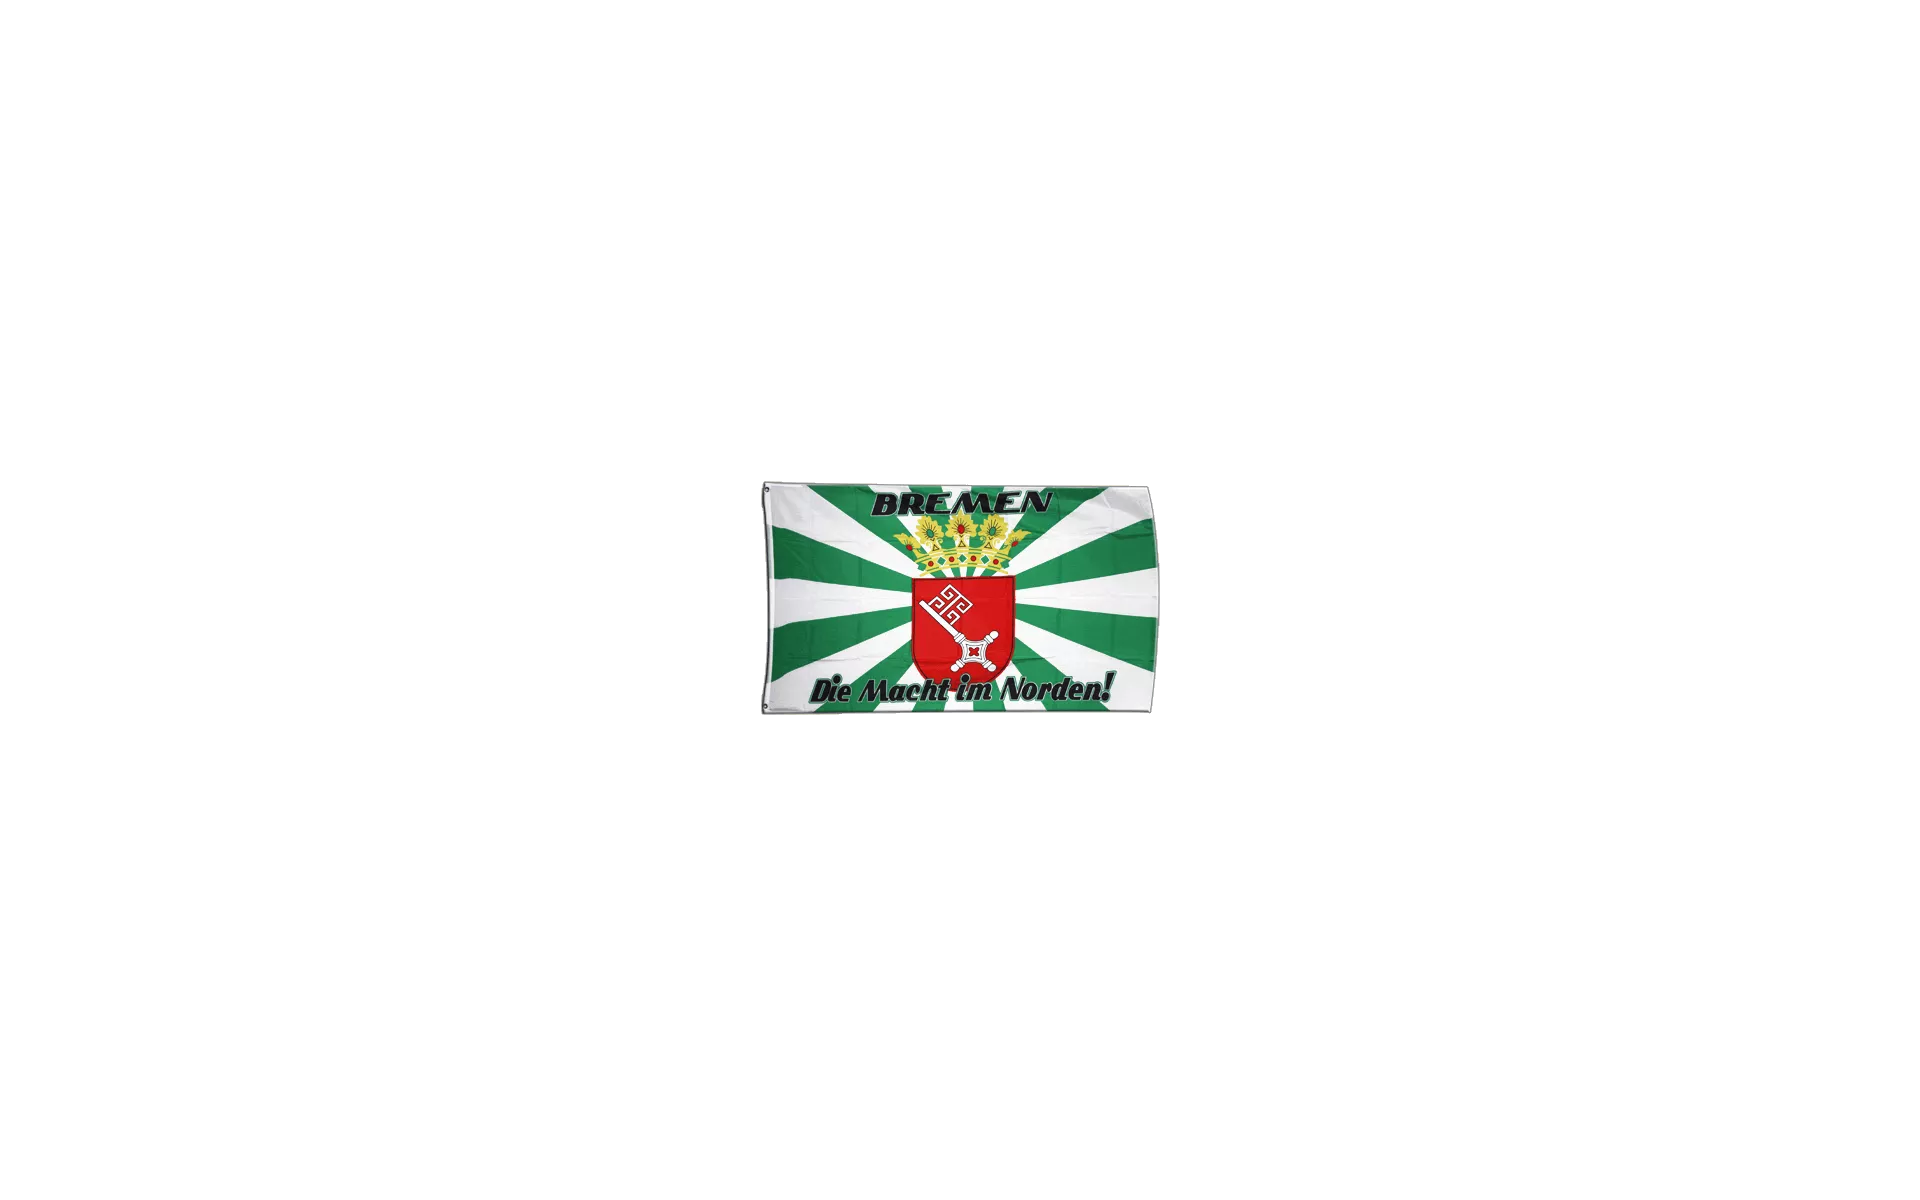 Fahnen Flagge Bremen Die Nr.1 im Norden 90 x 150 cm 